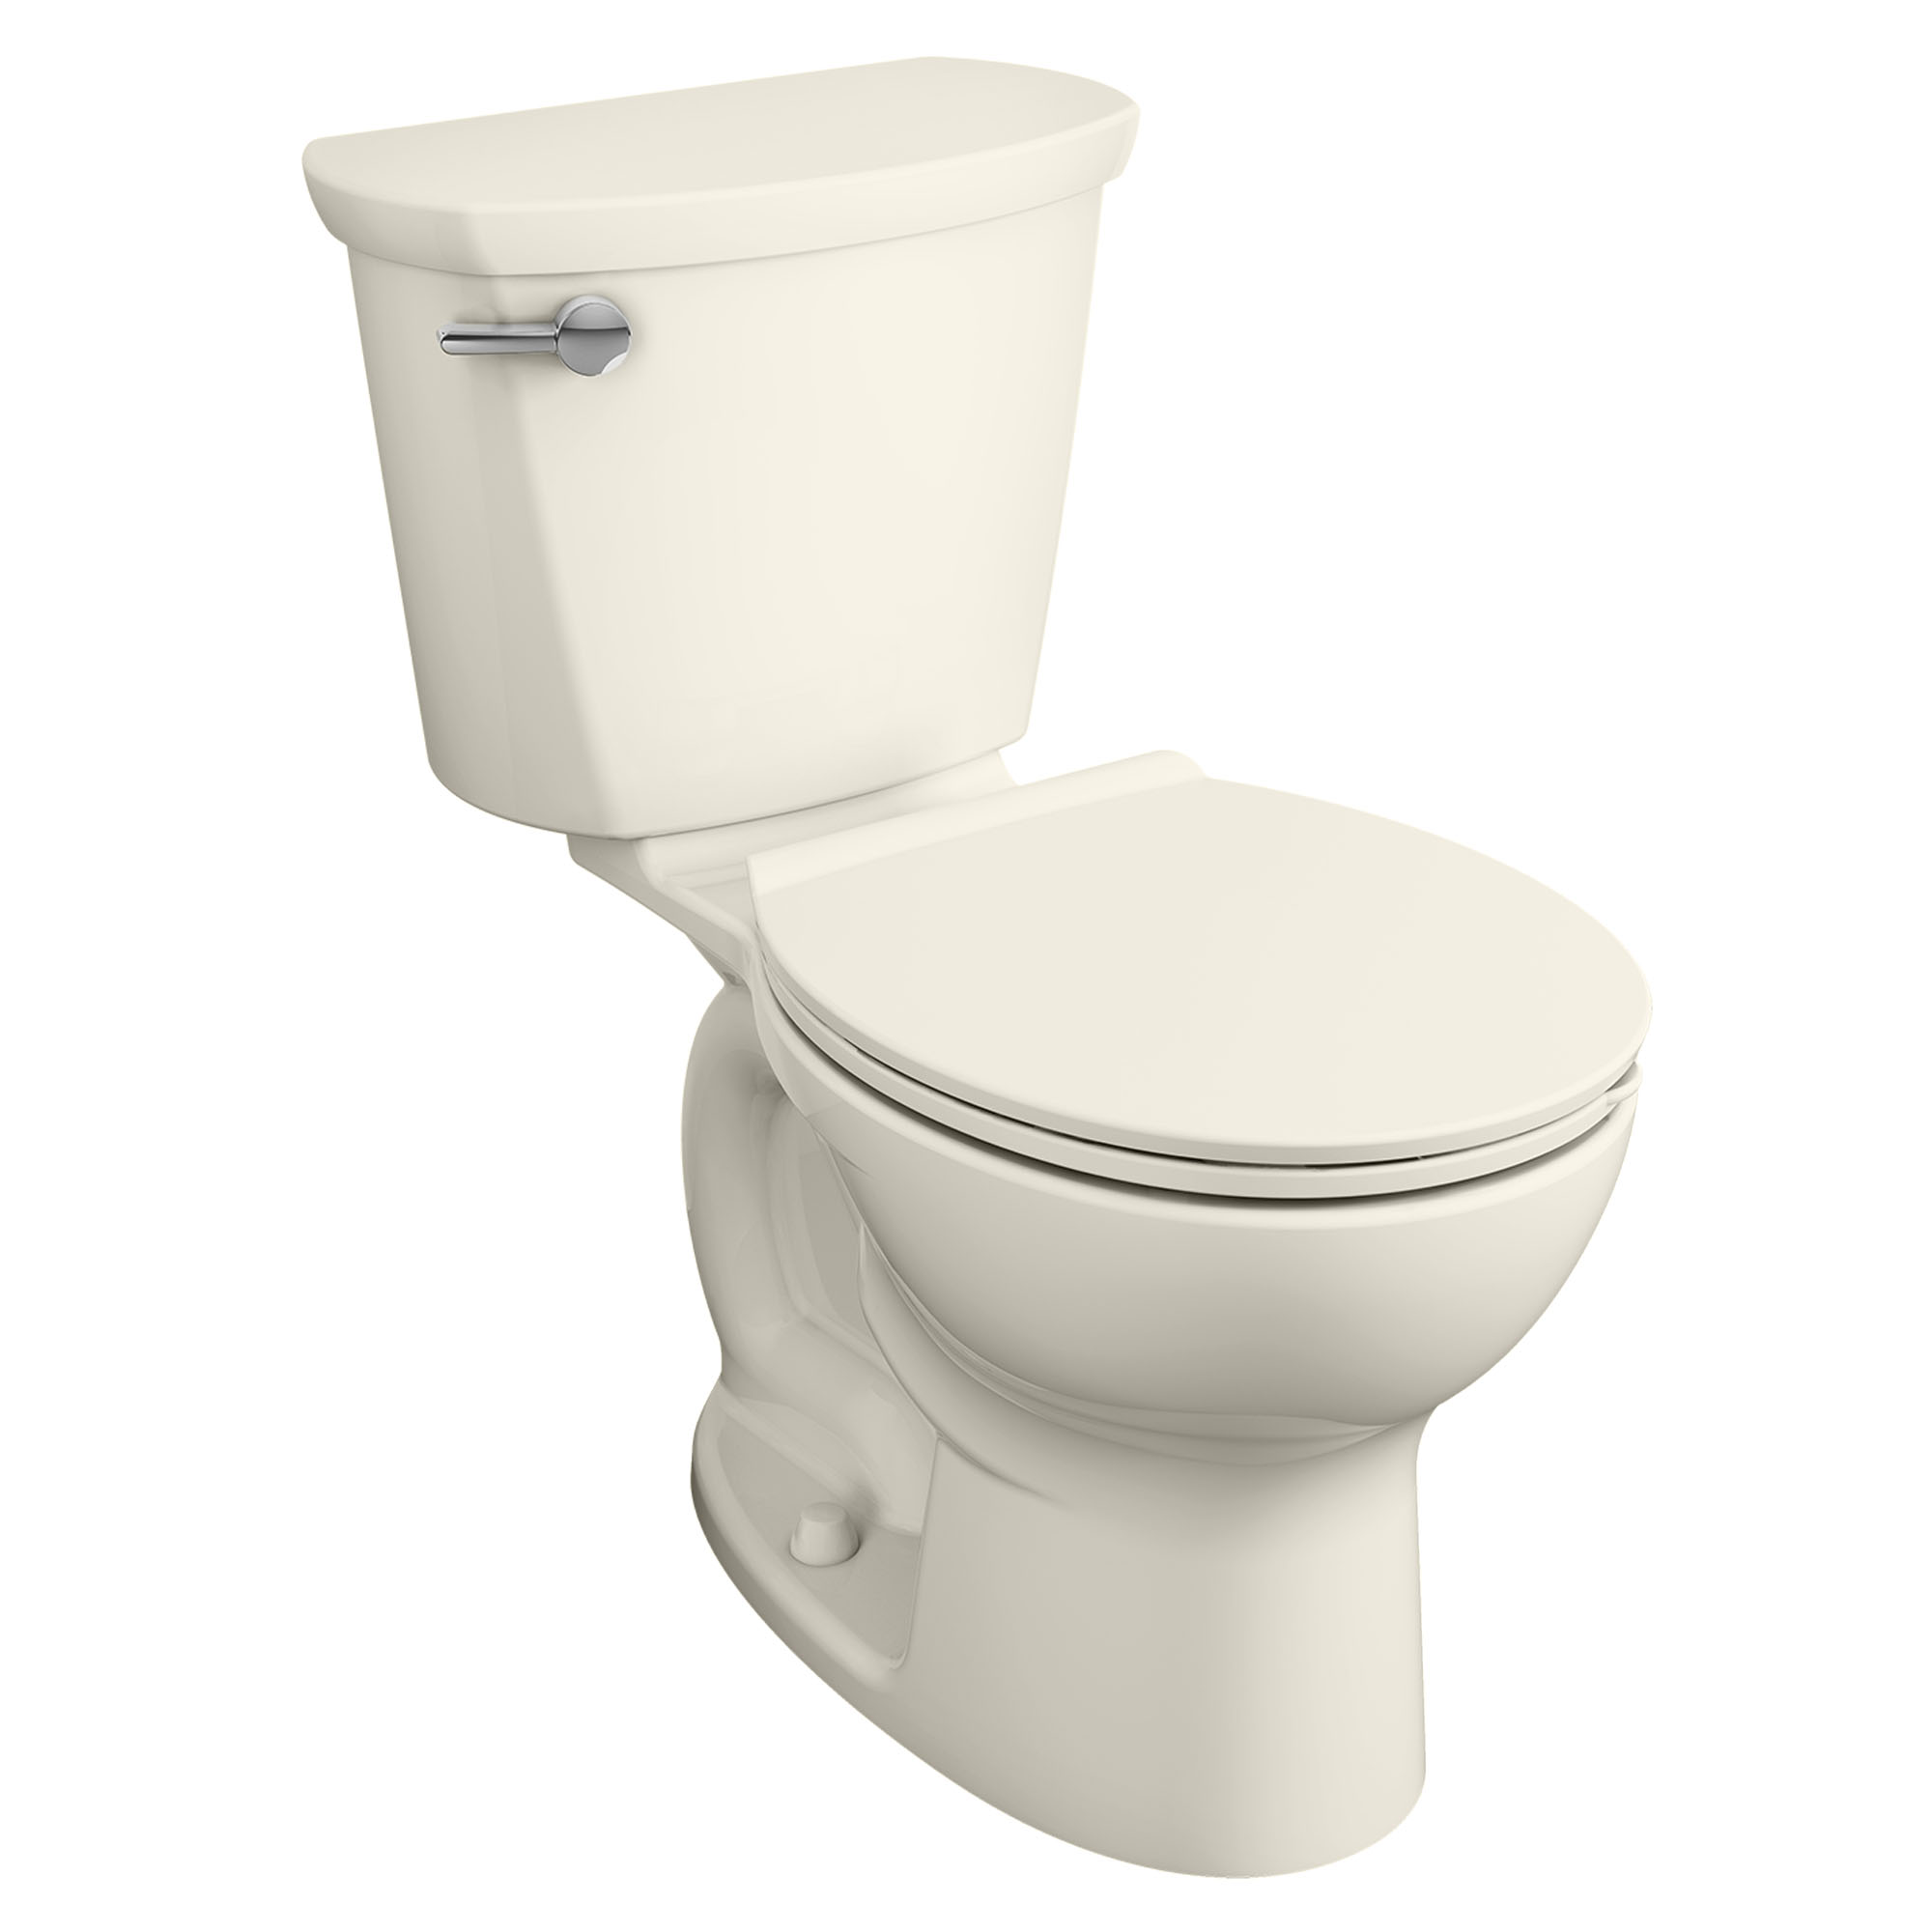 Toilette Cadet PRO, 2 pièces, 1,6 gpc/6,0 lpc, à cuvette au devant rond à hauteur régulière, sans siège